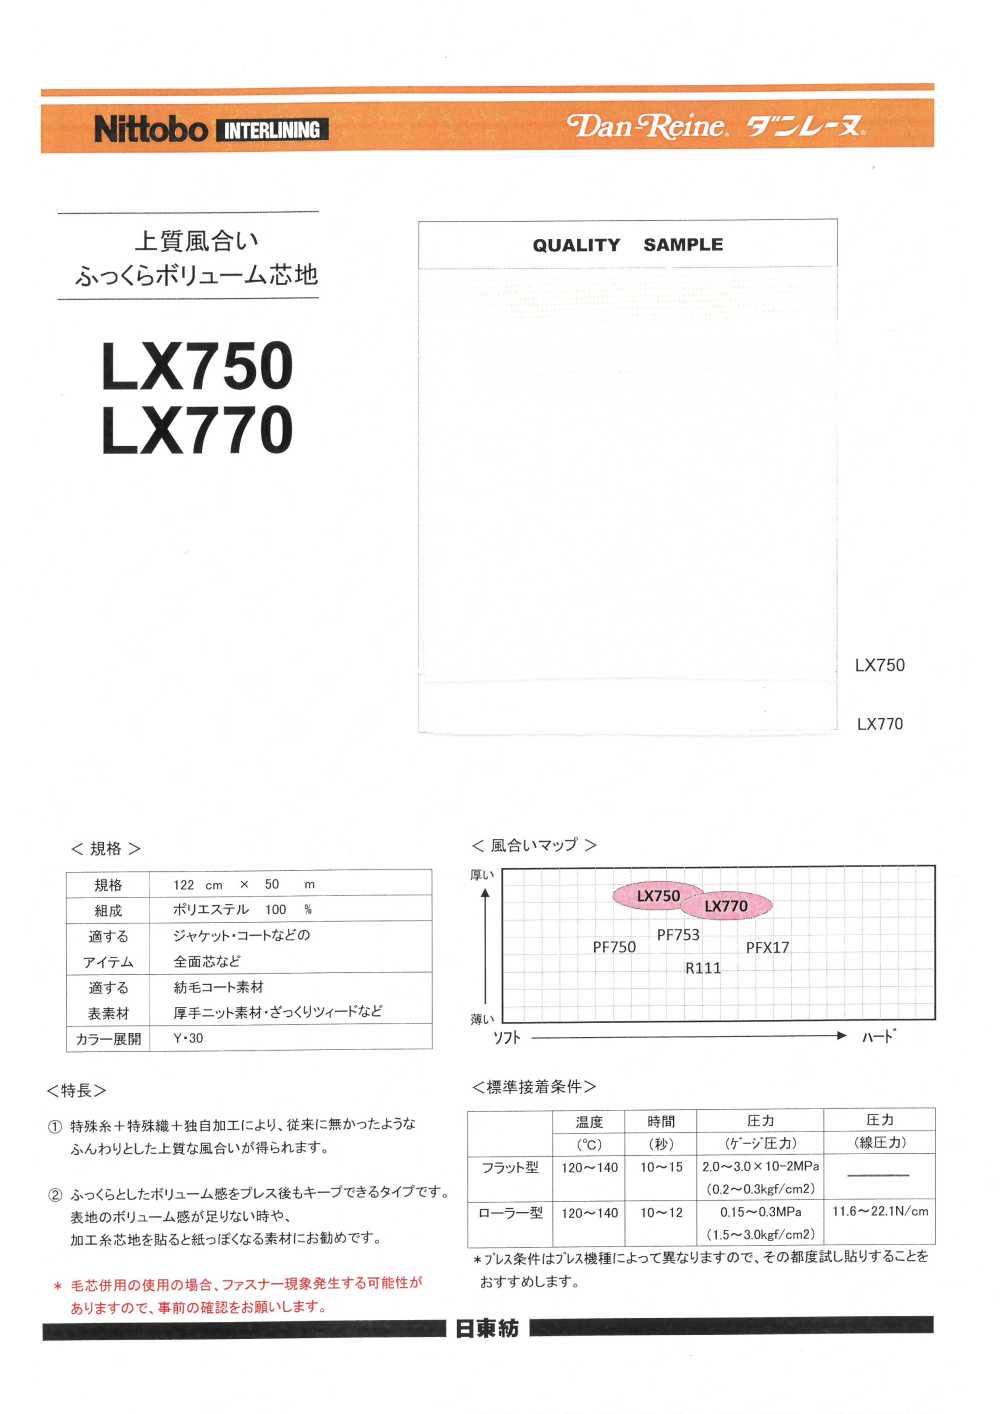 LX770 黏合襯，優質質感，襯布豐滿豐盈 日東紡績